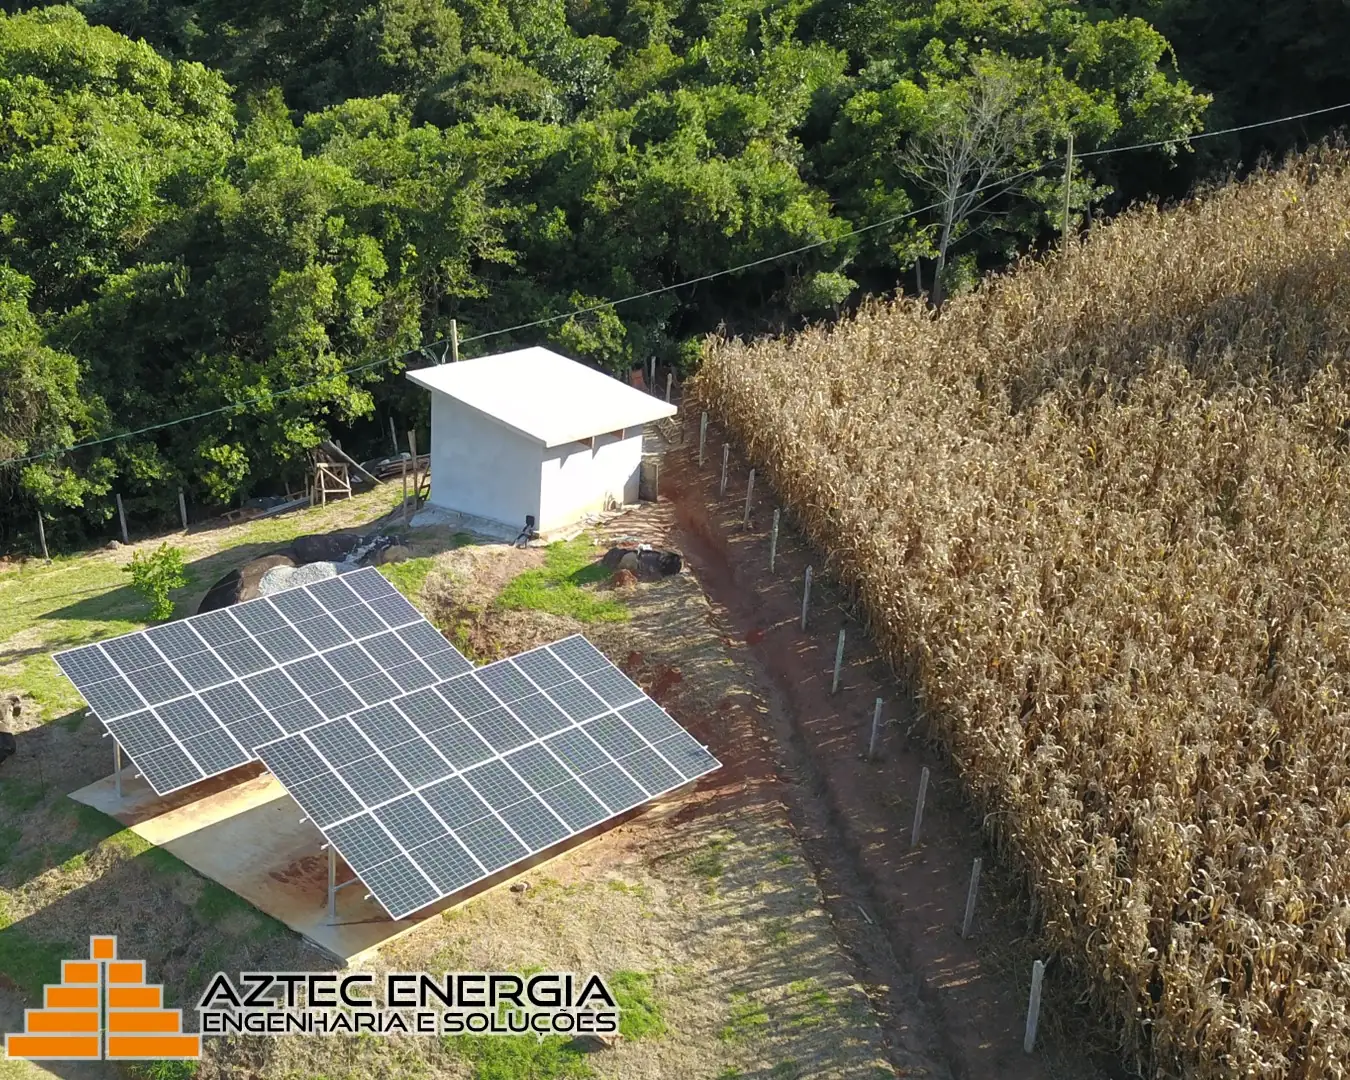 Instalação de painéis fotovoltaicos em solo, ao lado de uma plantação.